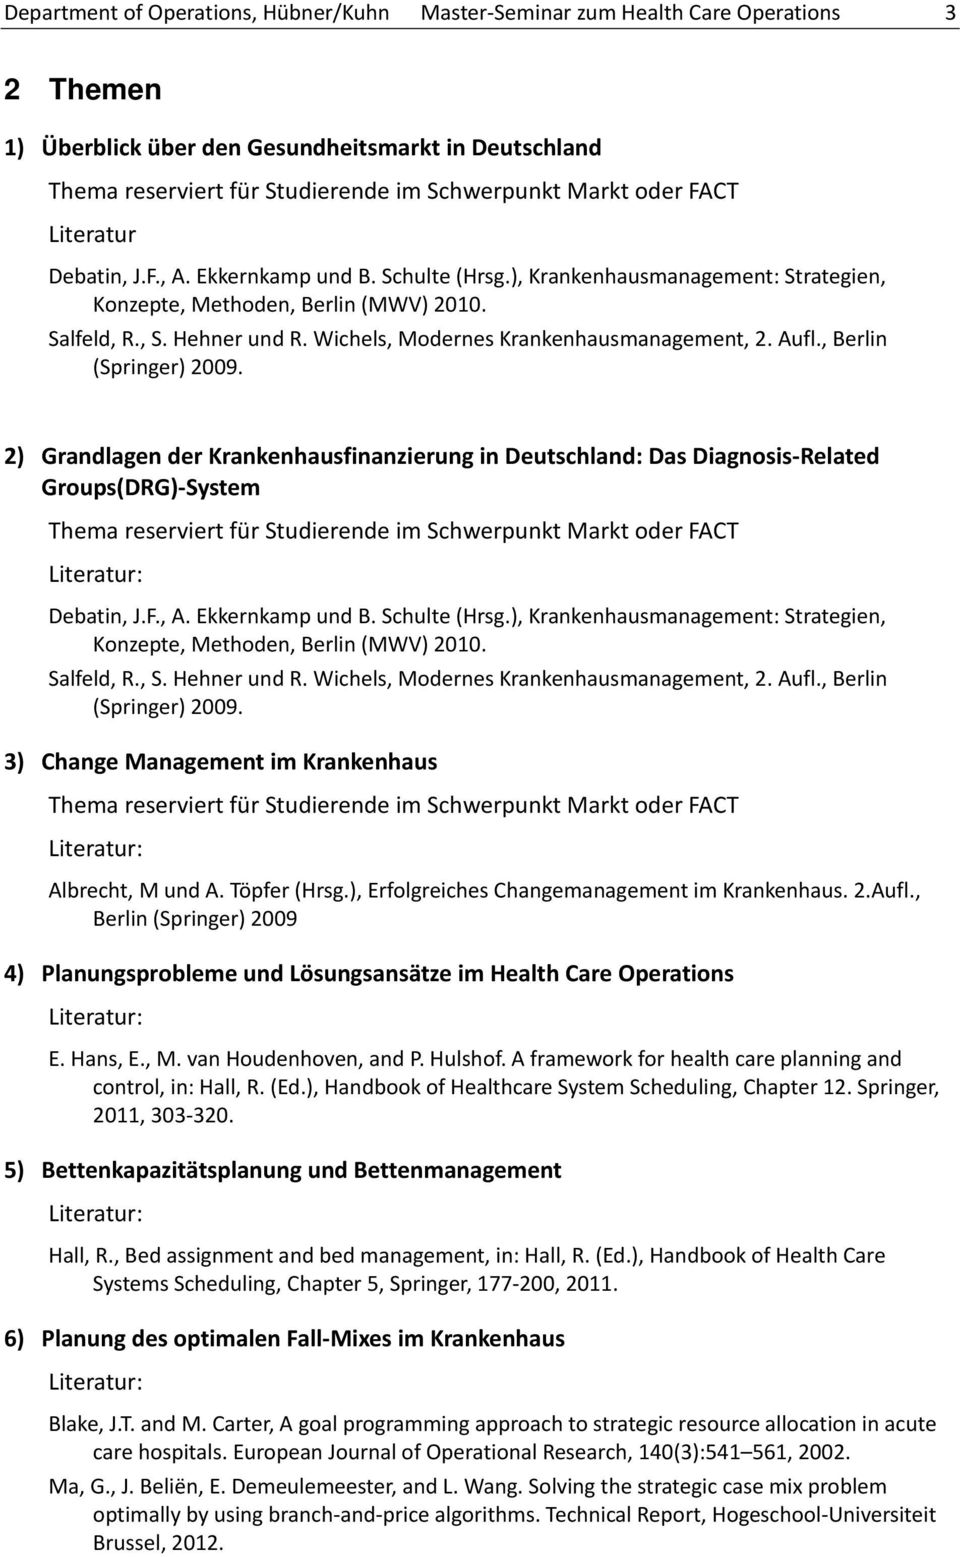 2) Grandlagen der Krankenhausfinanzierung in Deutschland: Das Diagnosis Related Groups(DRG) System Debatin, J.F., A. Ekkernkamp und B.  3) Change Management im Krankenhaus Albrecht, M und A.